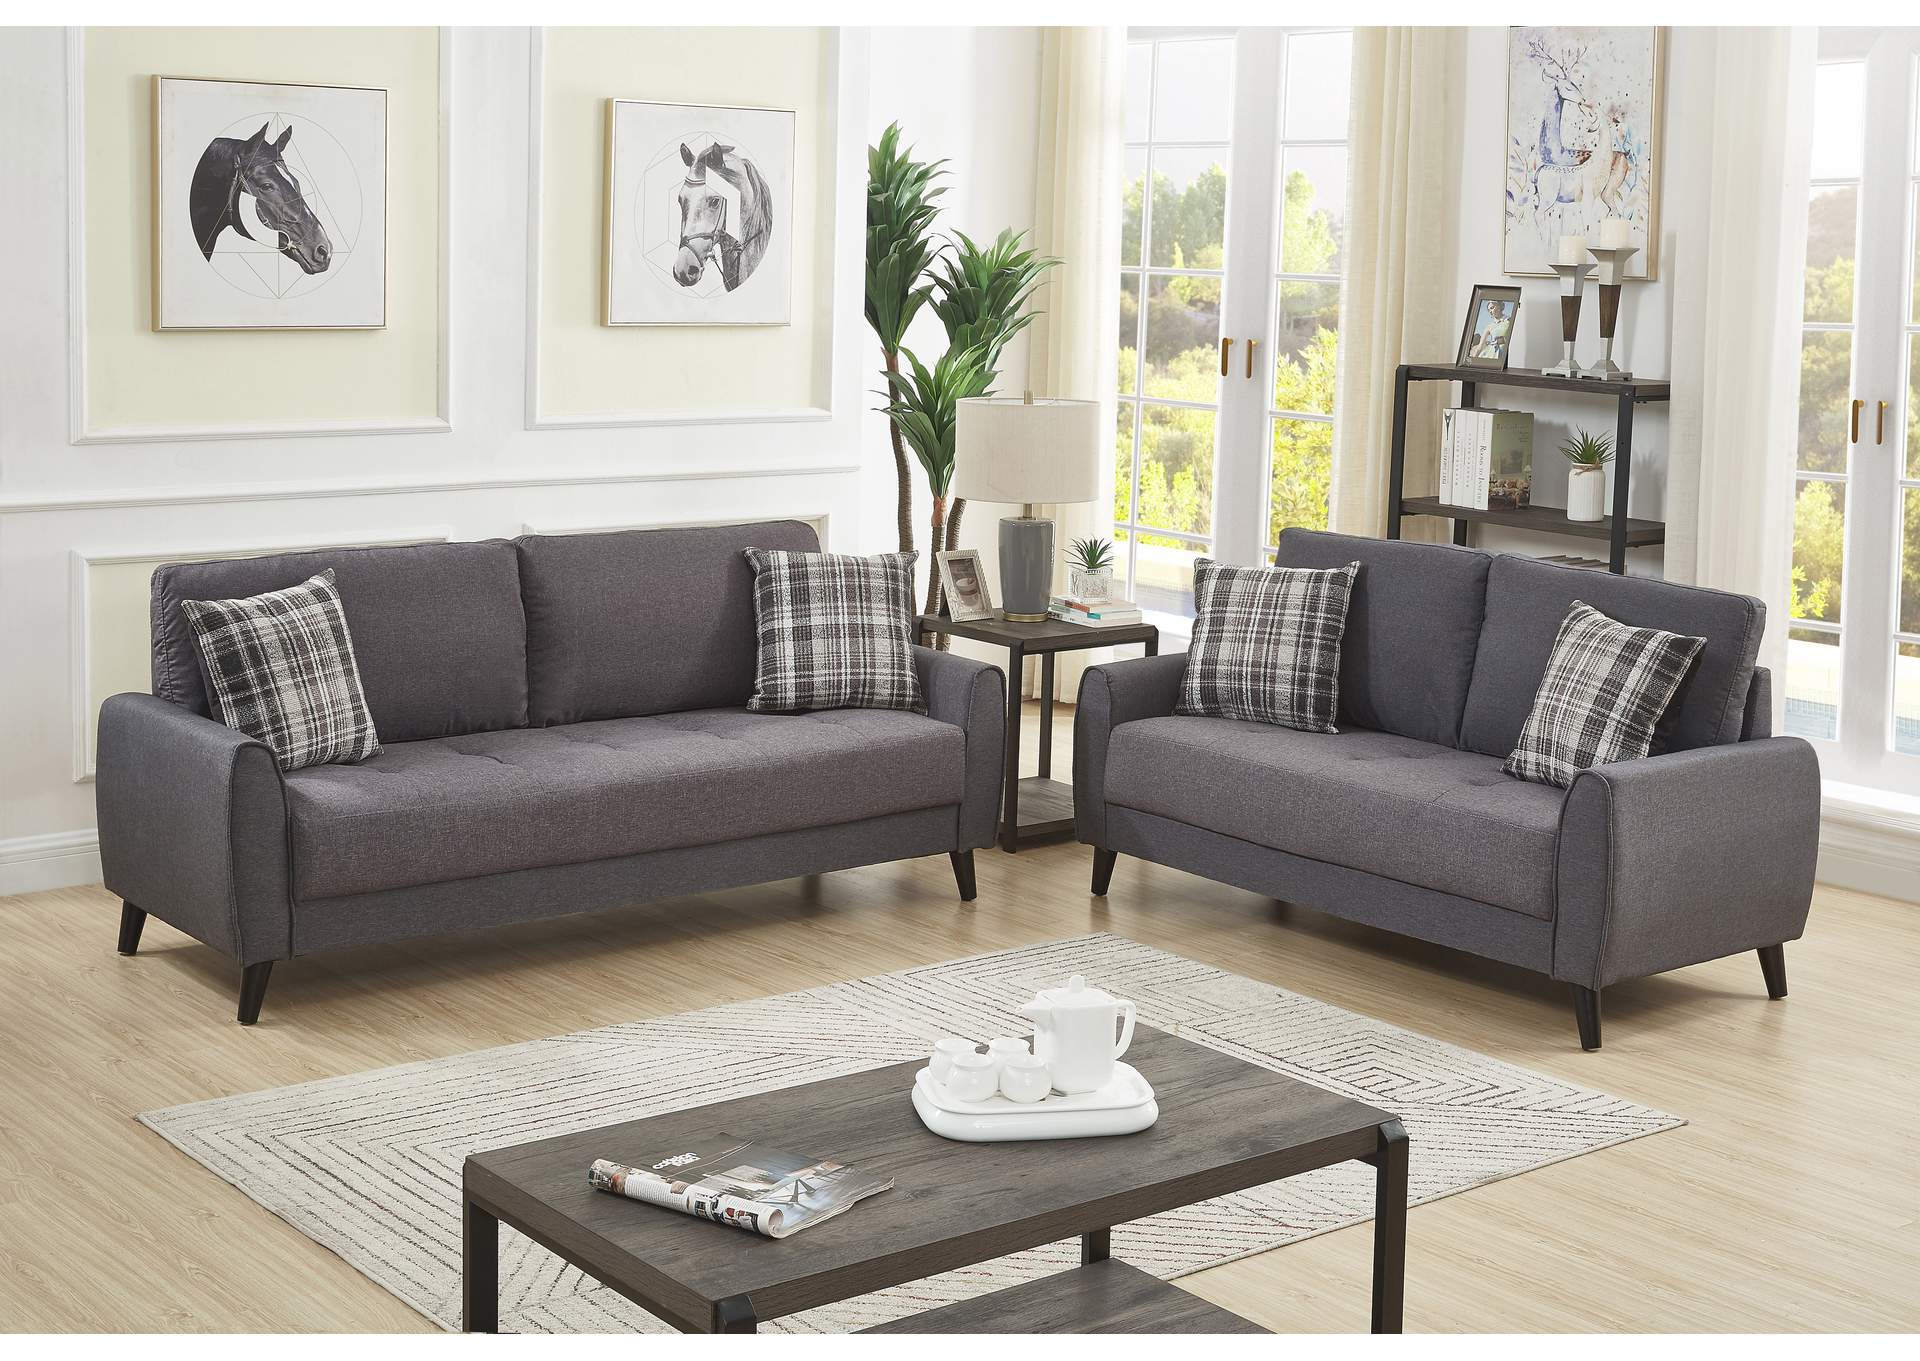 U2602 Sofa,Global Trading